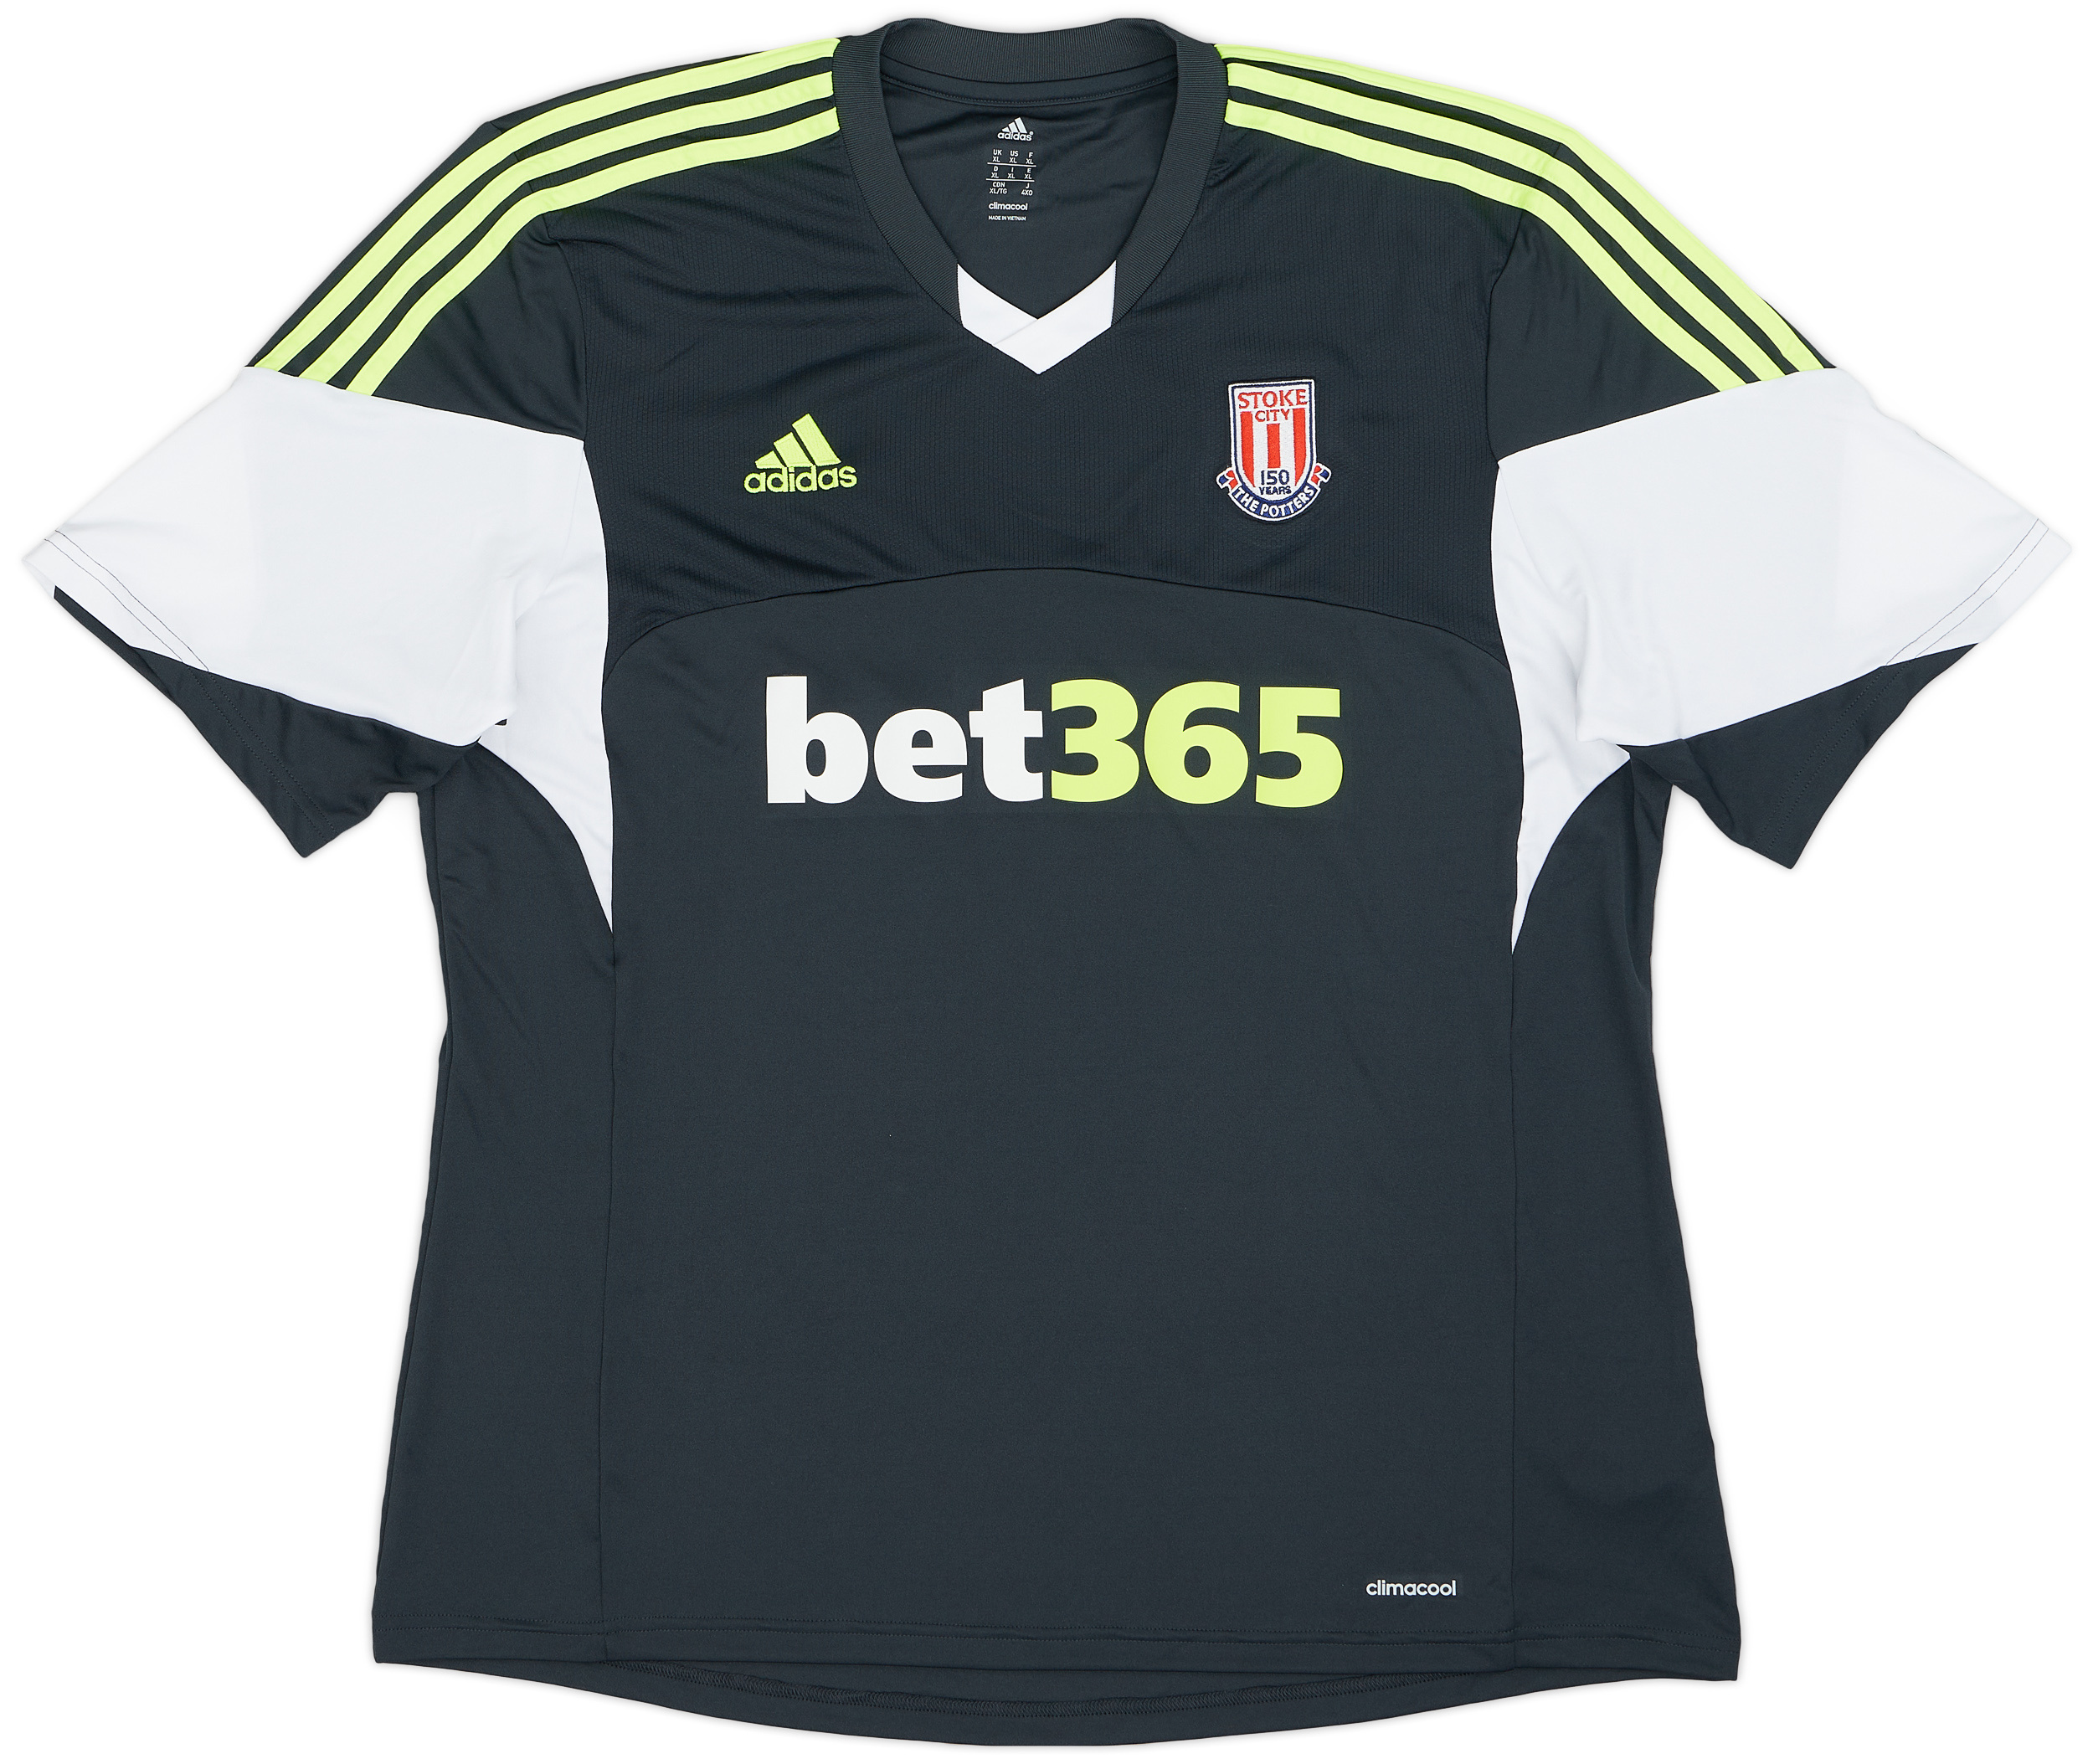 2013-14 Stoke City '150 Years' Away Shirt - 8/10 - ()